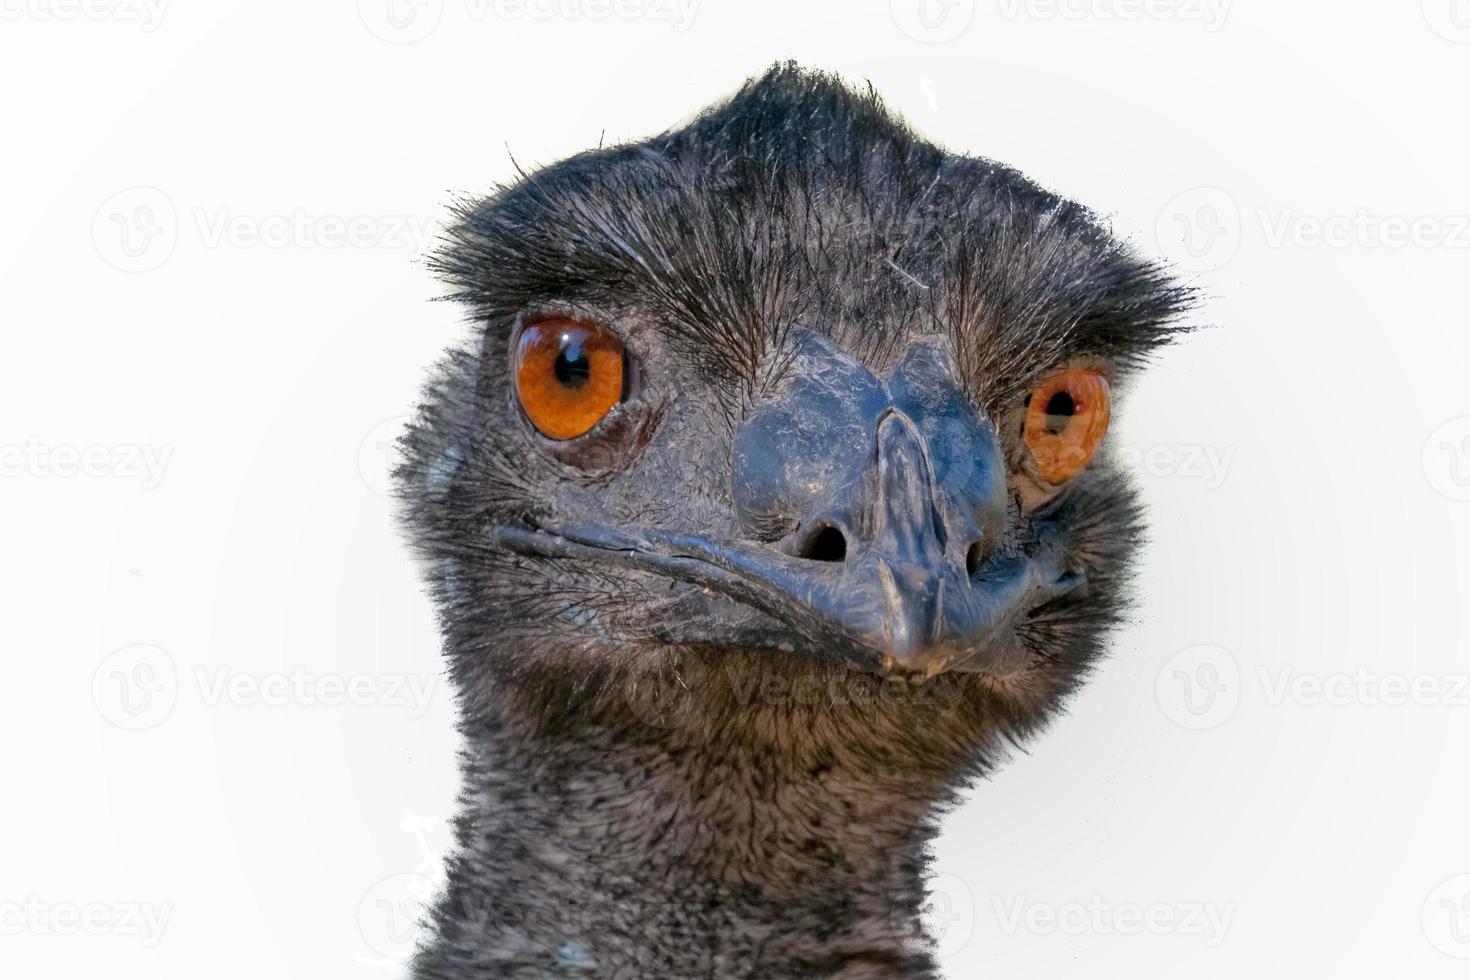 cabeça de avestruz australiana de perto olhando para você no fundo branco foto